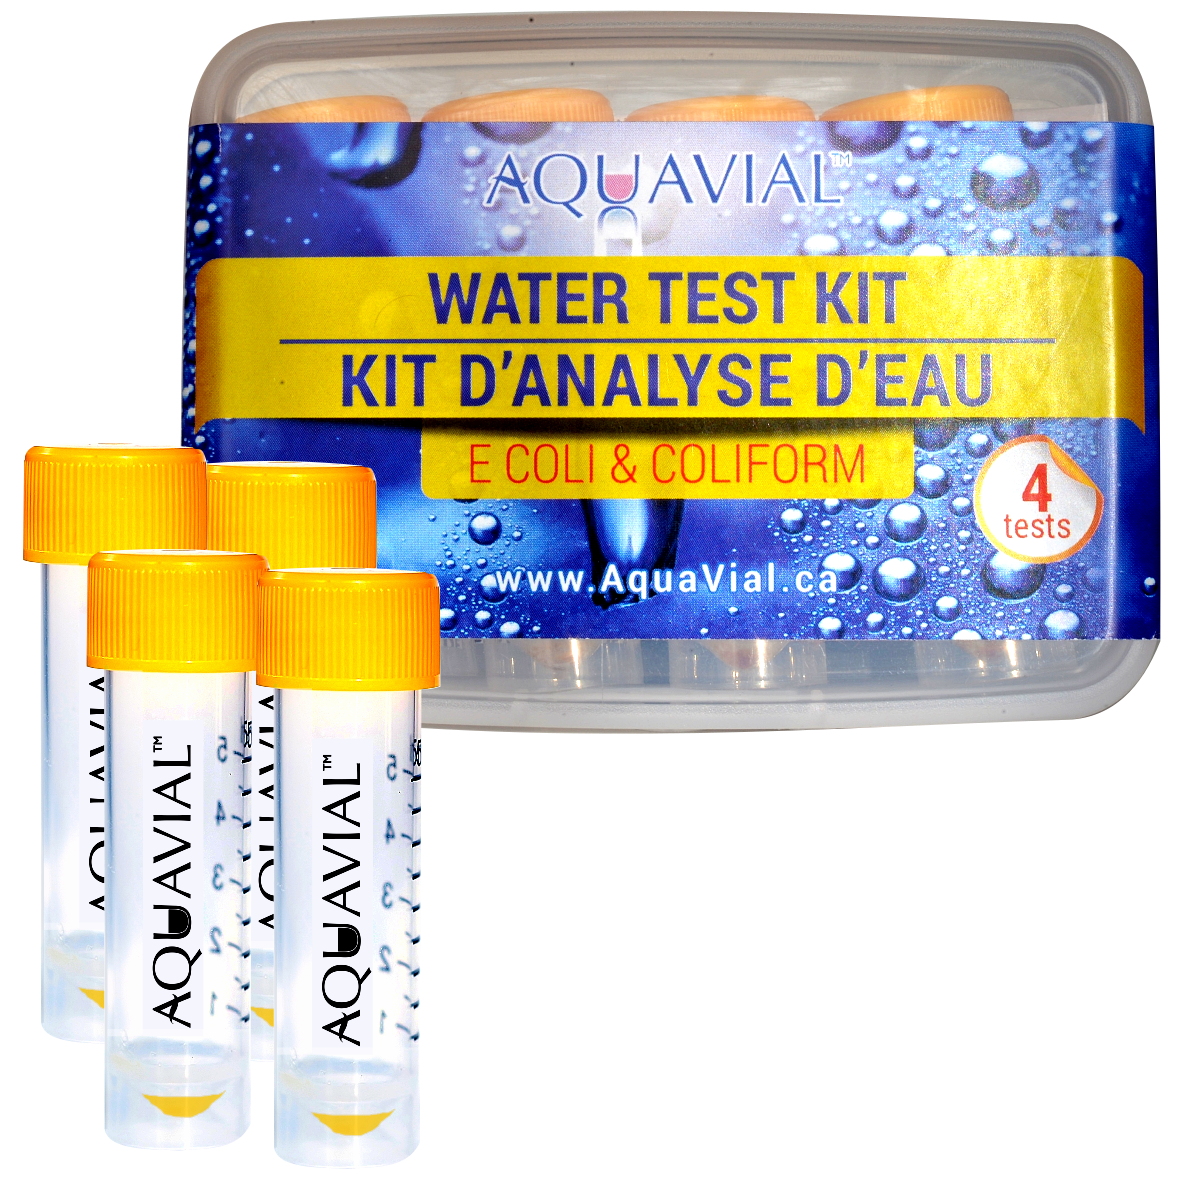 coli dix tests eau salubre Eau potable Test Kits bactéries coliformes E 